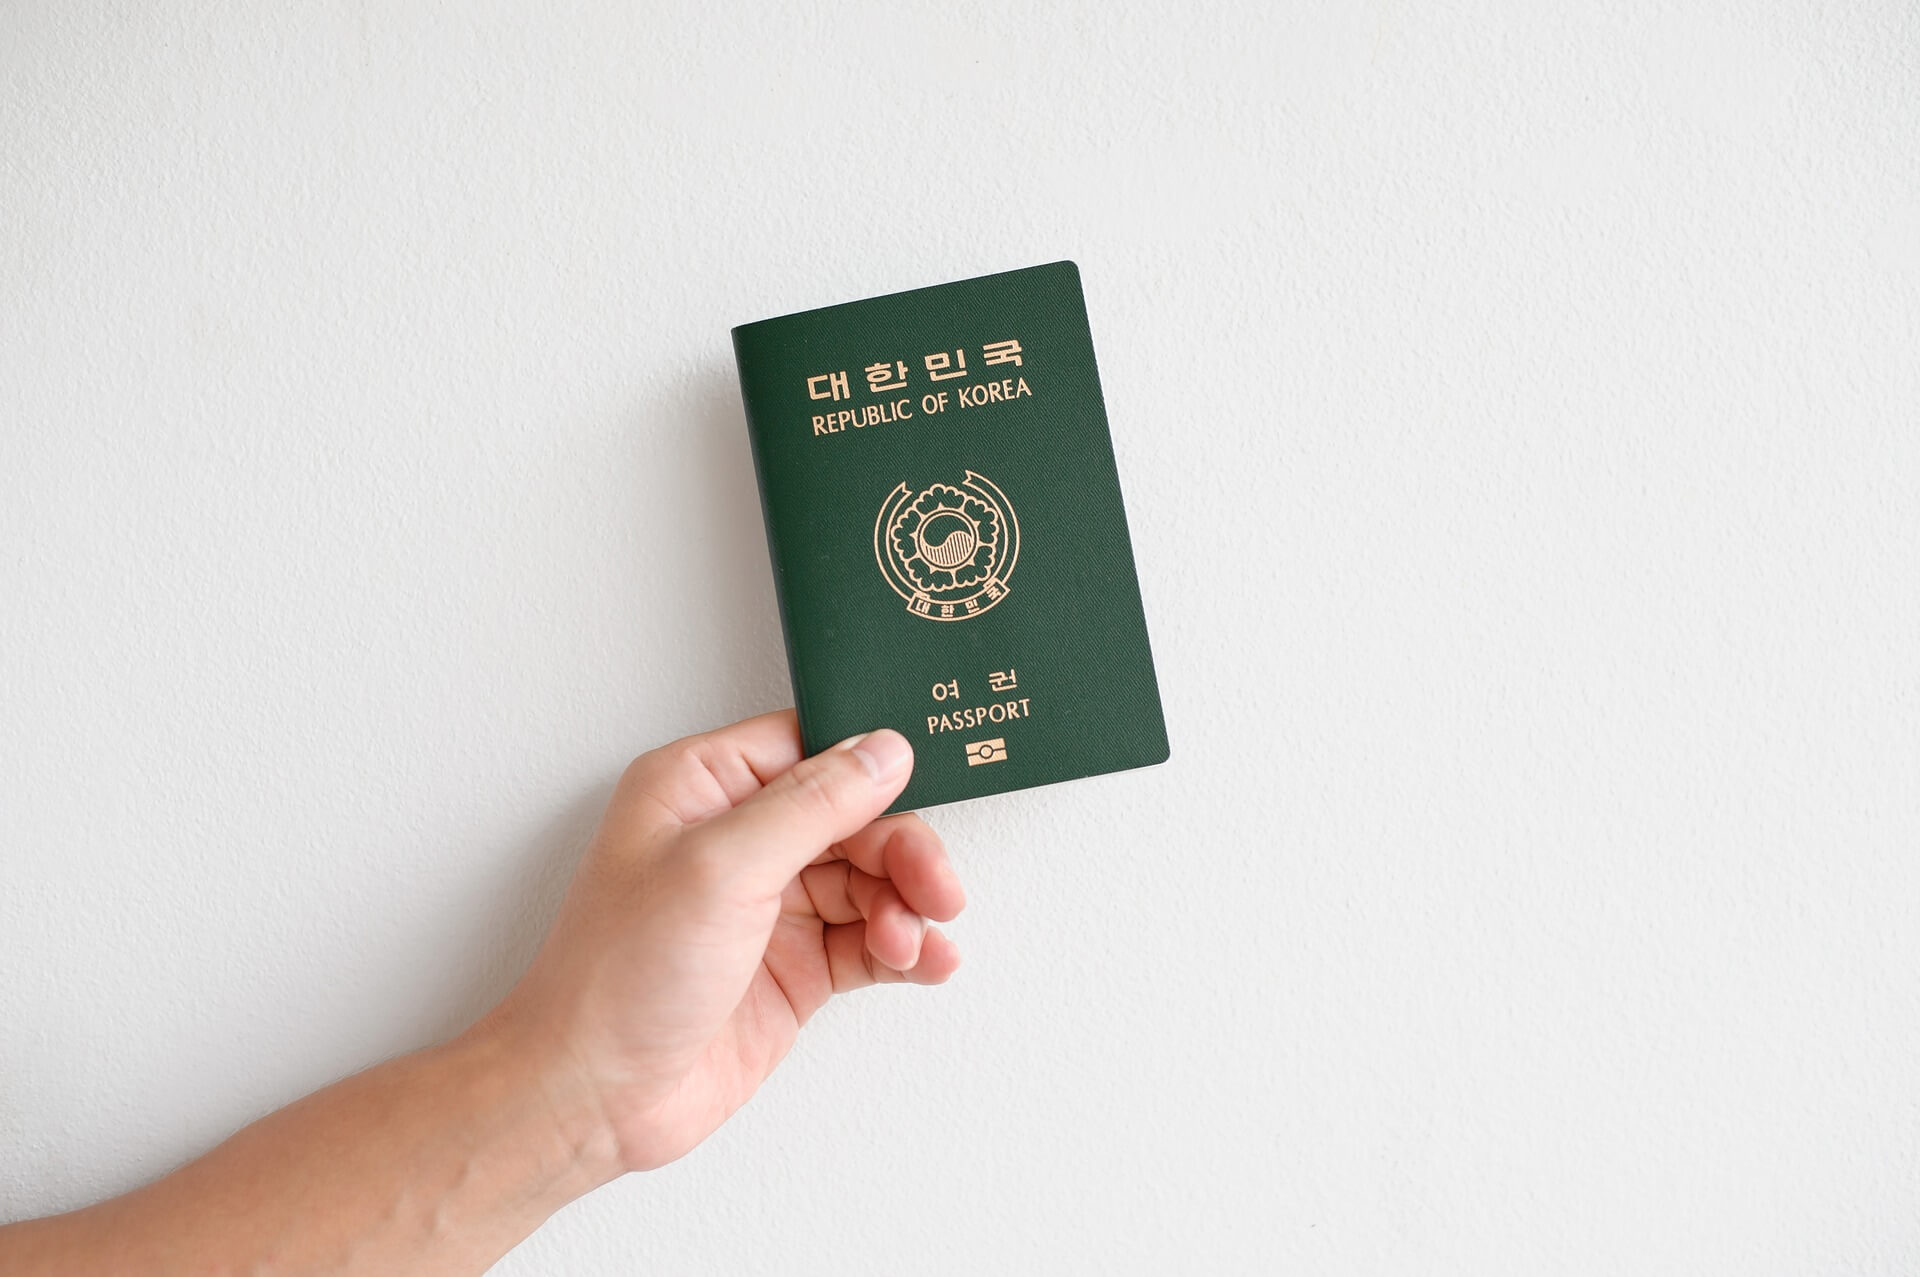 תמונה של דרכון קוריאני